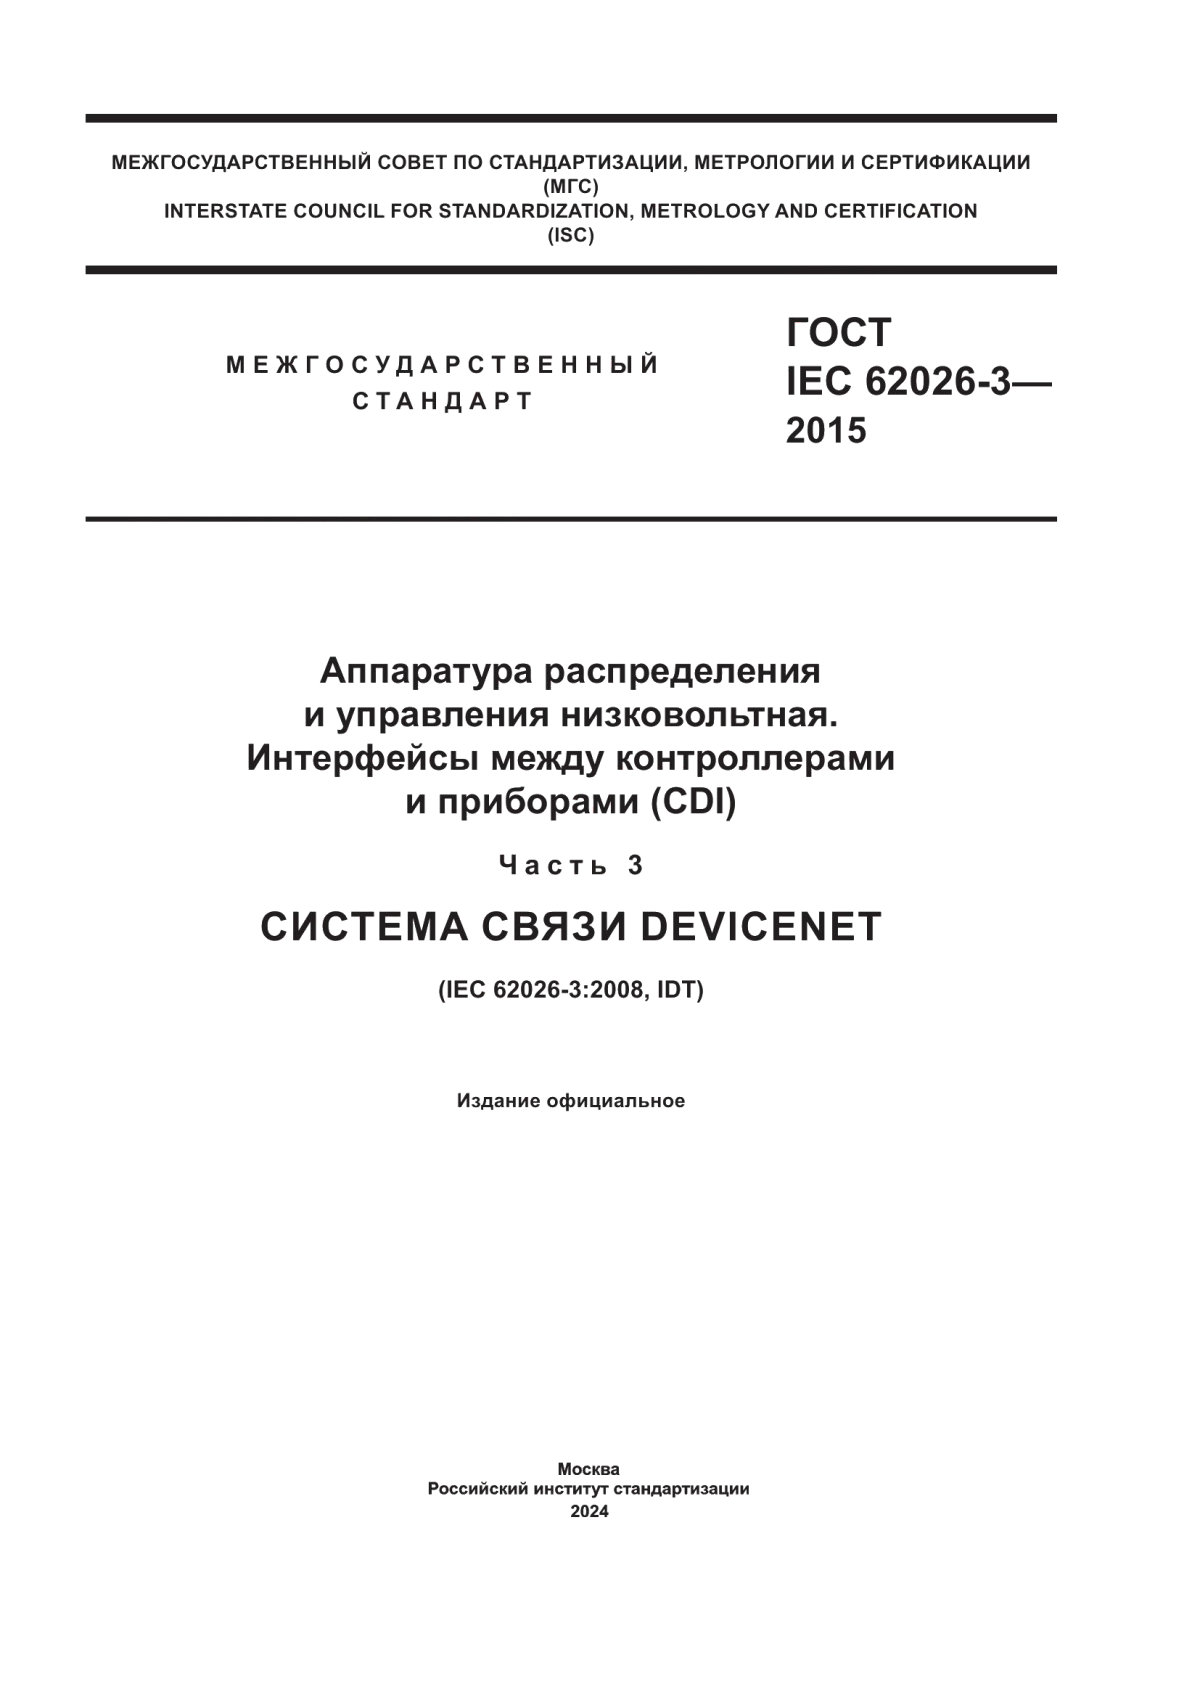 ГОСТ IEC 62026-3-2015 Аппаратура распределения и управления низковольтная. Интерфейсы между контроллерами и приборами (CDI). Часть 3. Система связи DeviceNET